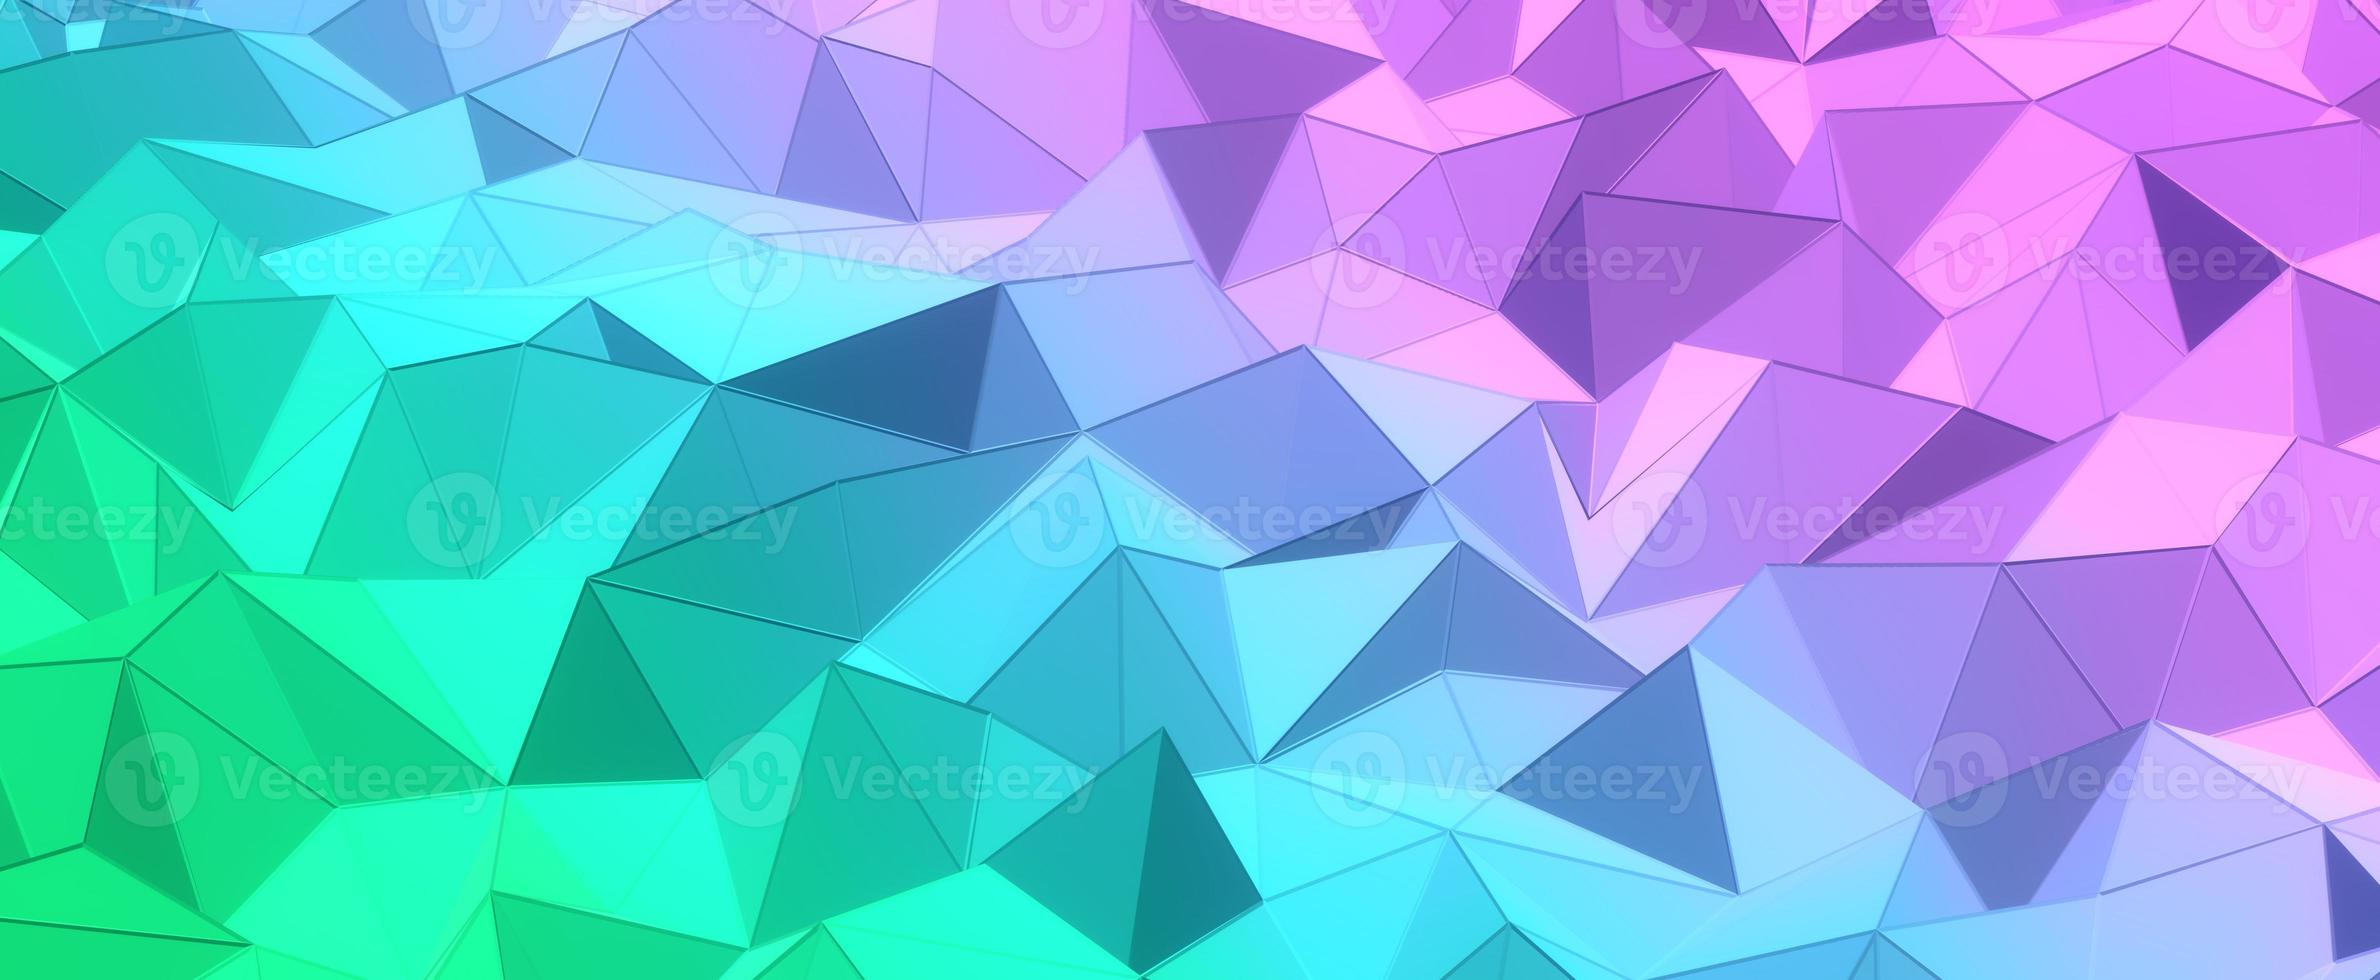 lila Kristallhügel mit blauem Hintergrund mit Farbverlauf. geometrisches grünes Polygon mit 3D-Rendernetz. dreieckige digitale Texturen, die in kreativen Formationen mit futuristischem Interieur gestapelt sind foto